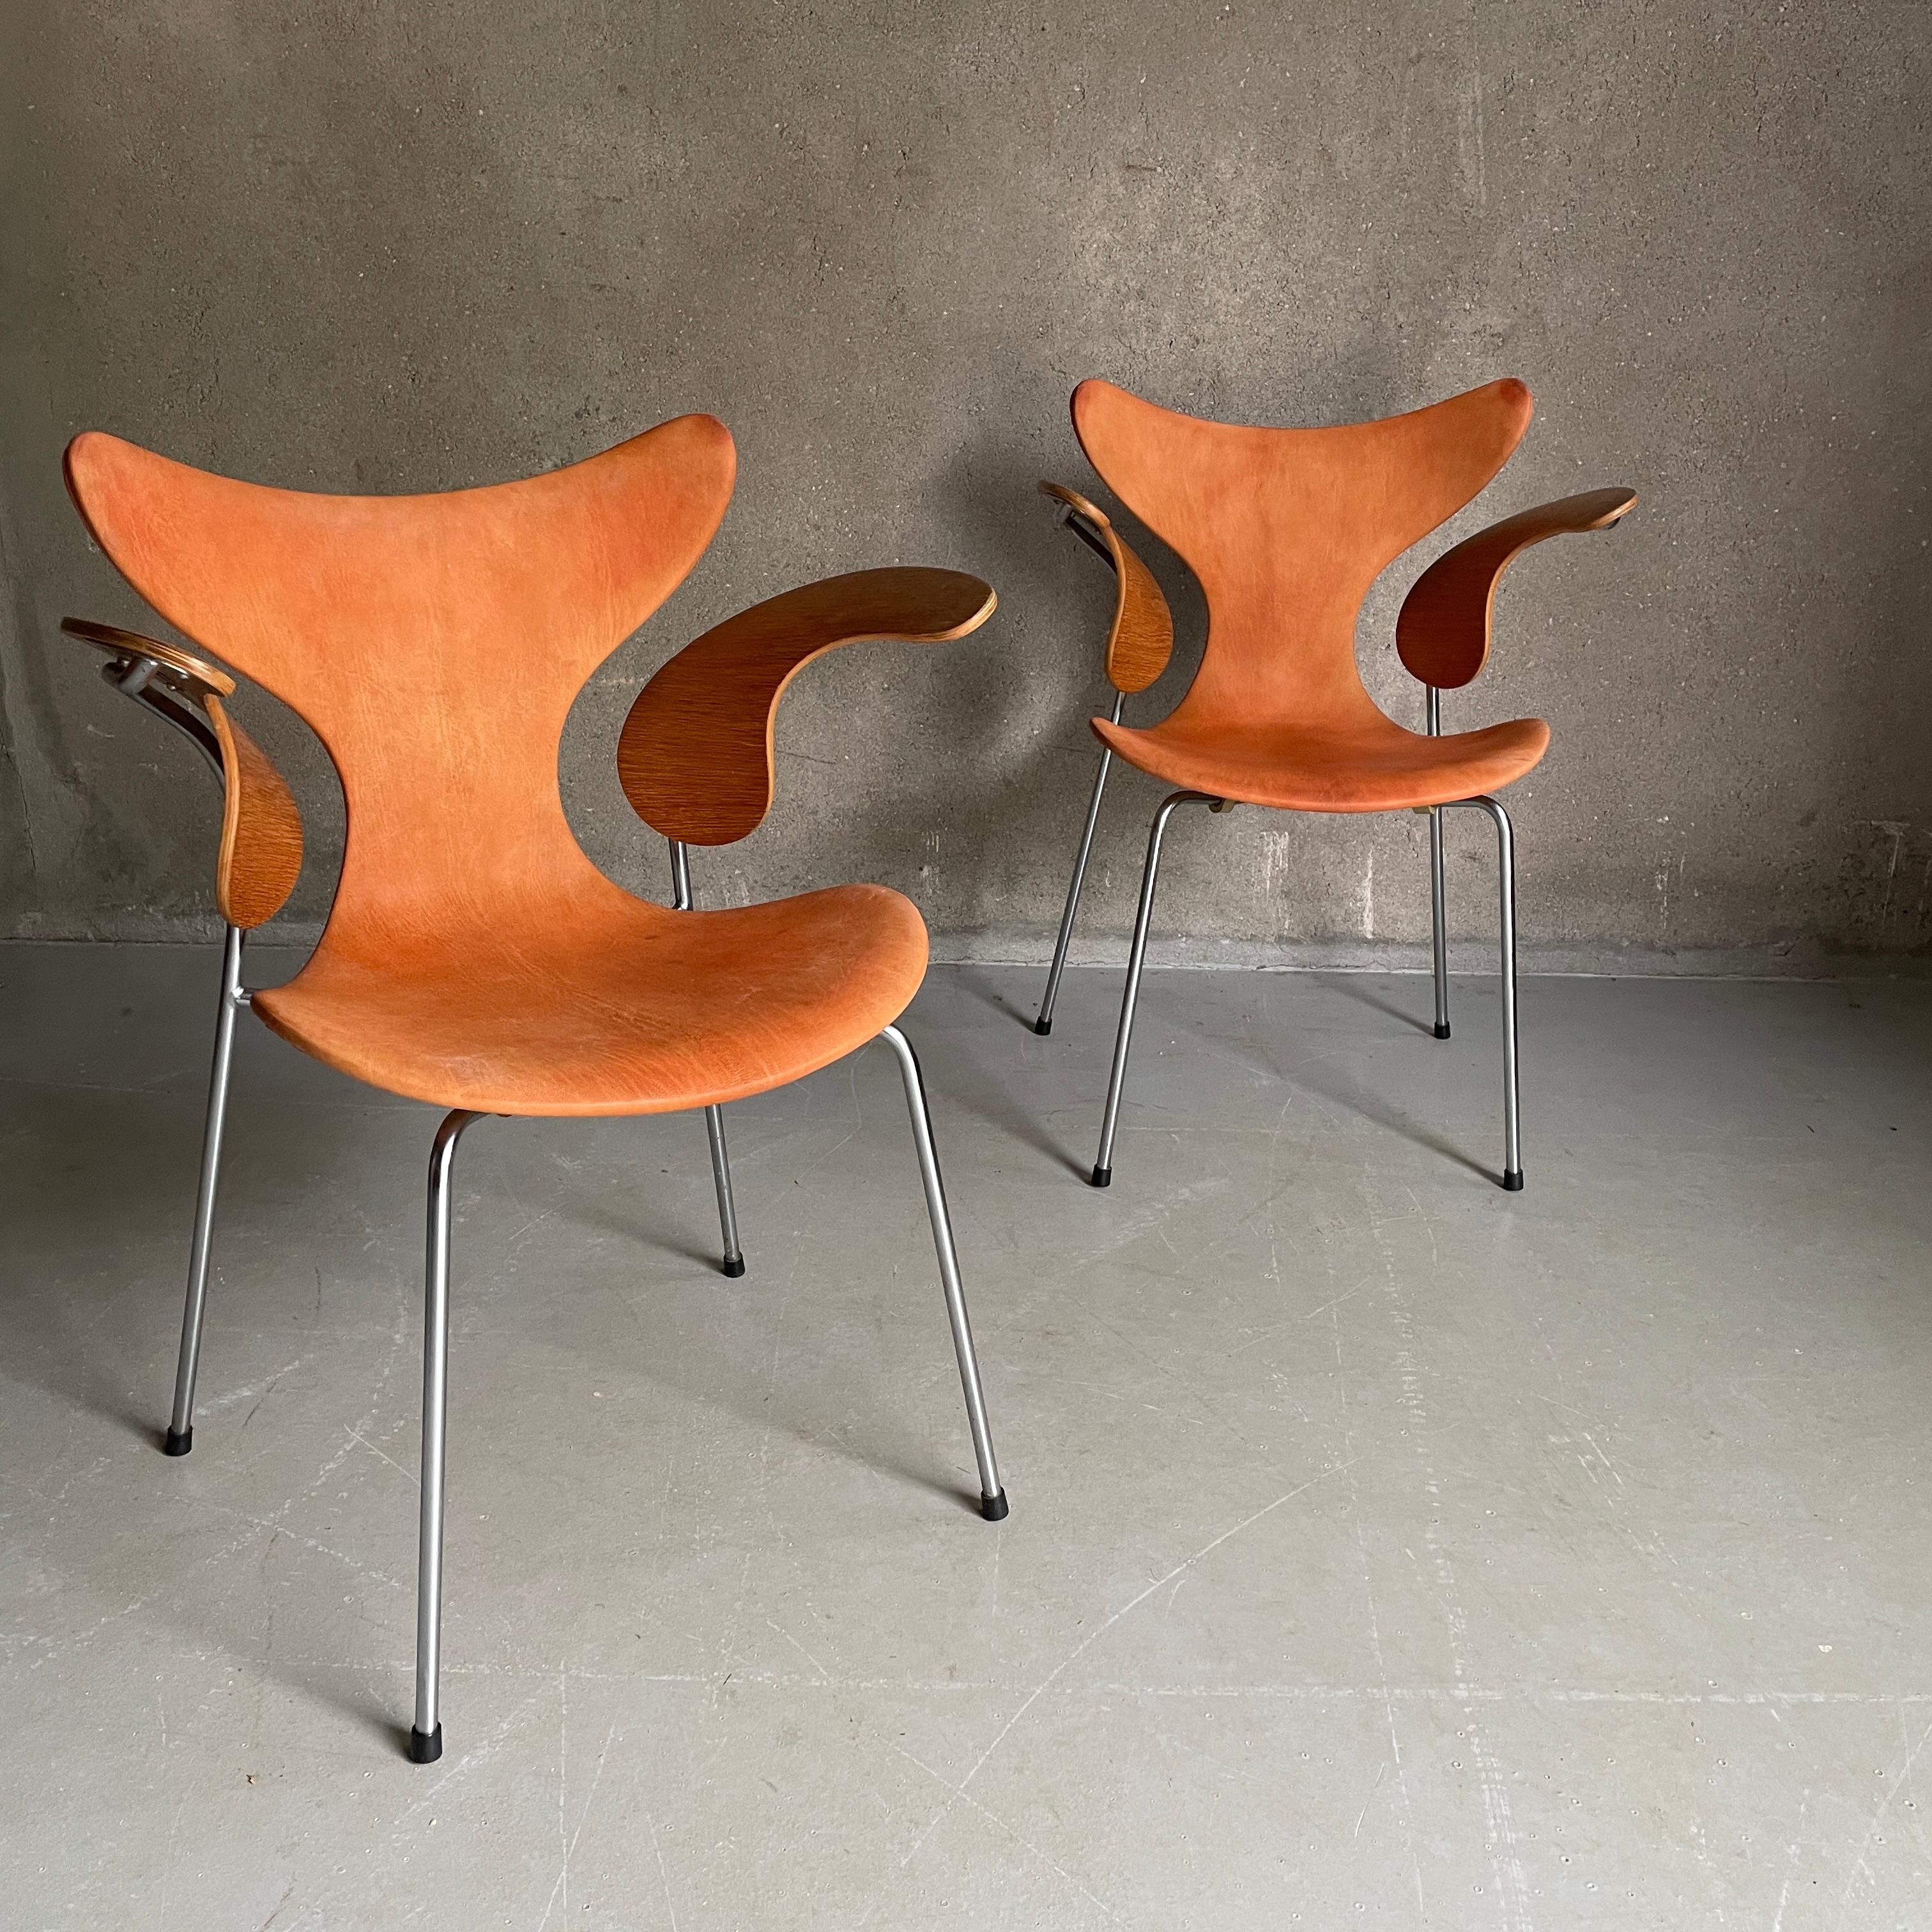 Arne Jacobsen. Paire de fauteuils. Modèle 3208 (